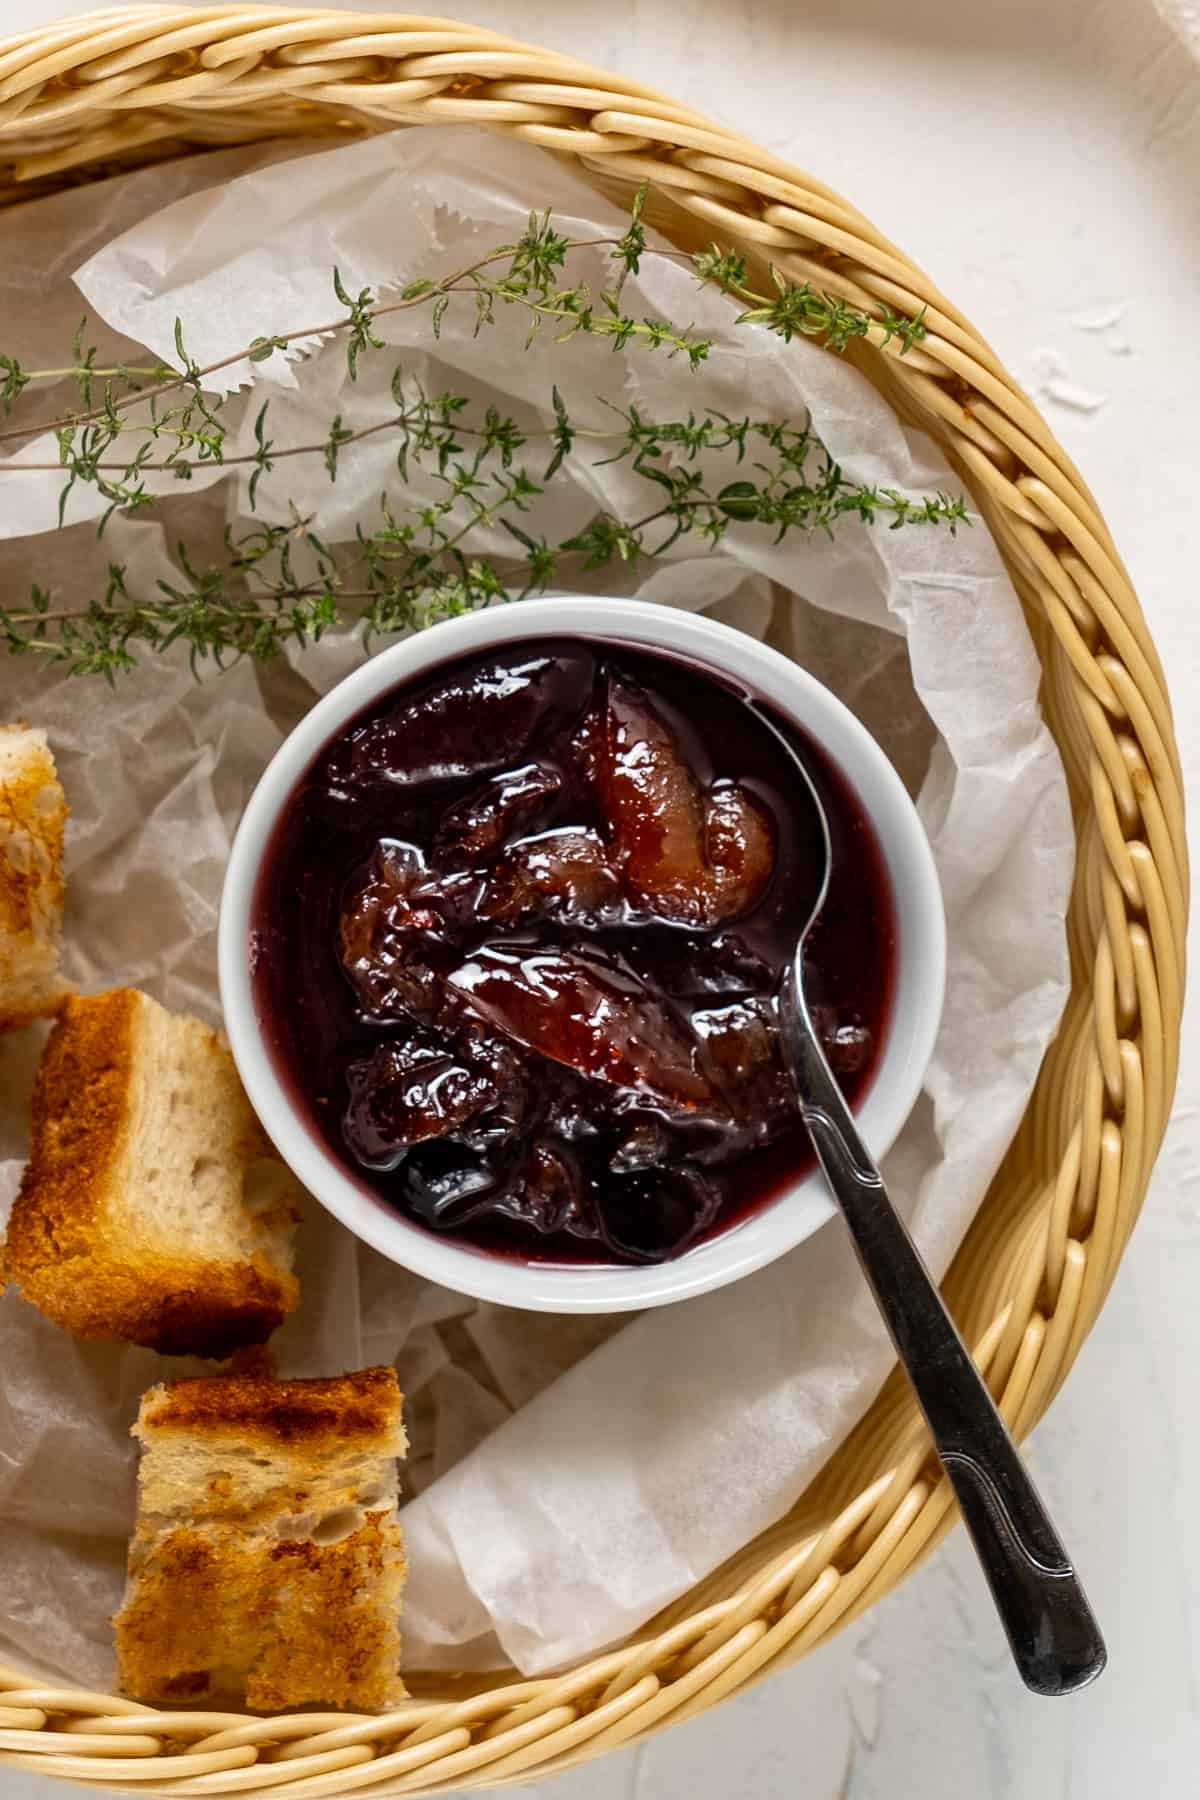 梅子酱装在一个小白碗里，里面有一把勺子，烤过的迷你面包片和新鲜的百里香都装在一个篮子里。